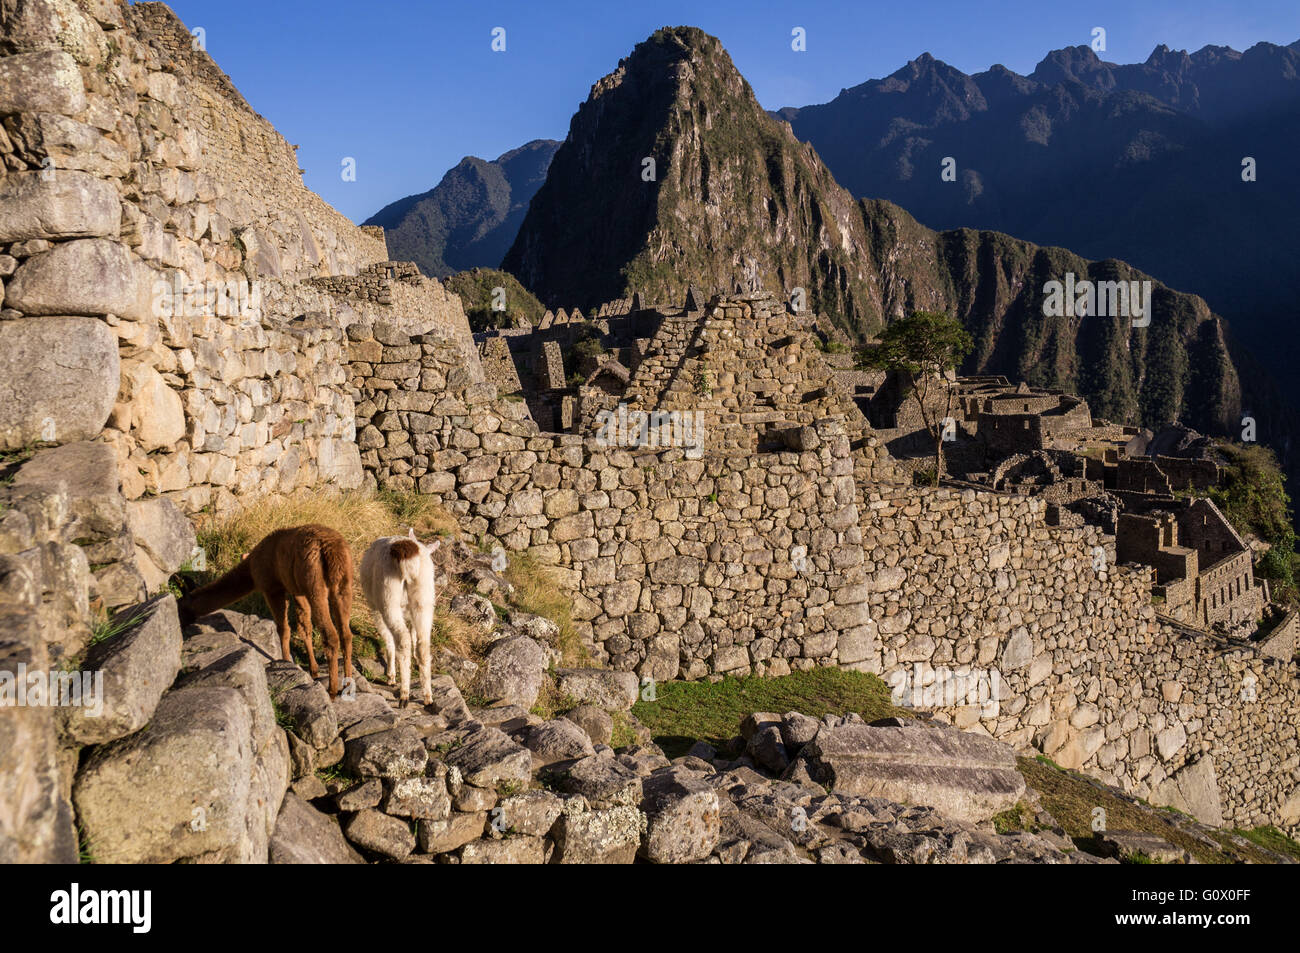 Zwei Lamas im berühmten Inka-Stadt Machu Picchu stehen vor einer Wand - Machu Picchu, PERU im Oktober 2015 Stockfoto